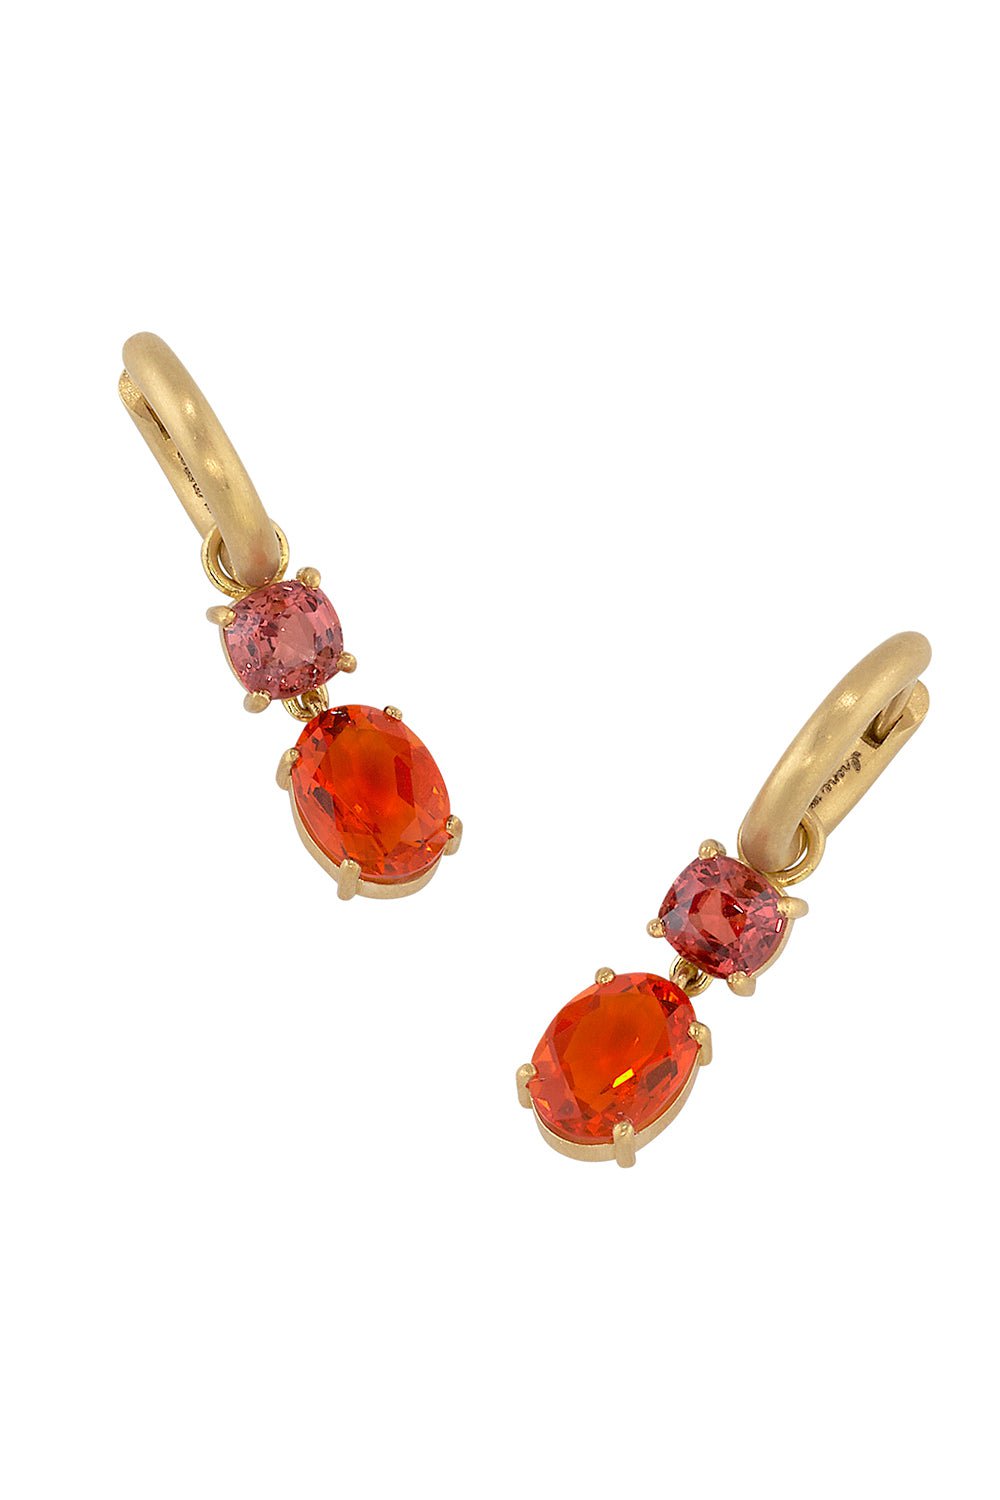 IRENE NEUWIRTH JEWELRY-Gemmy Gem Fire Opal Huggie Earrings-YELLOW GOLD